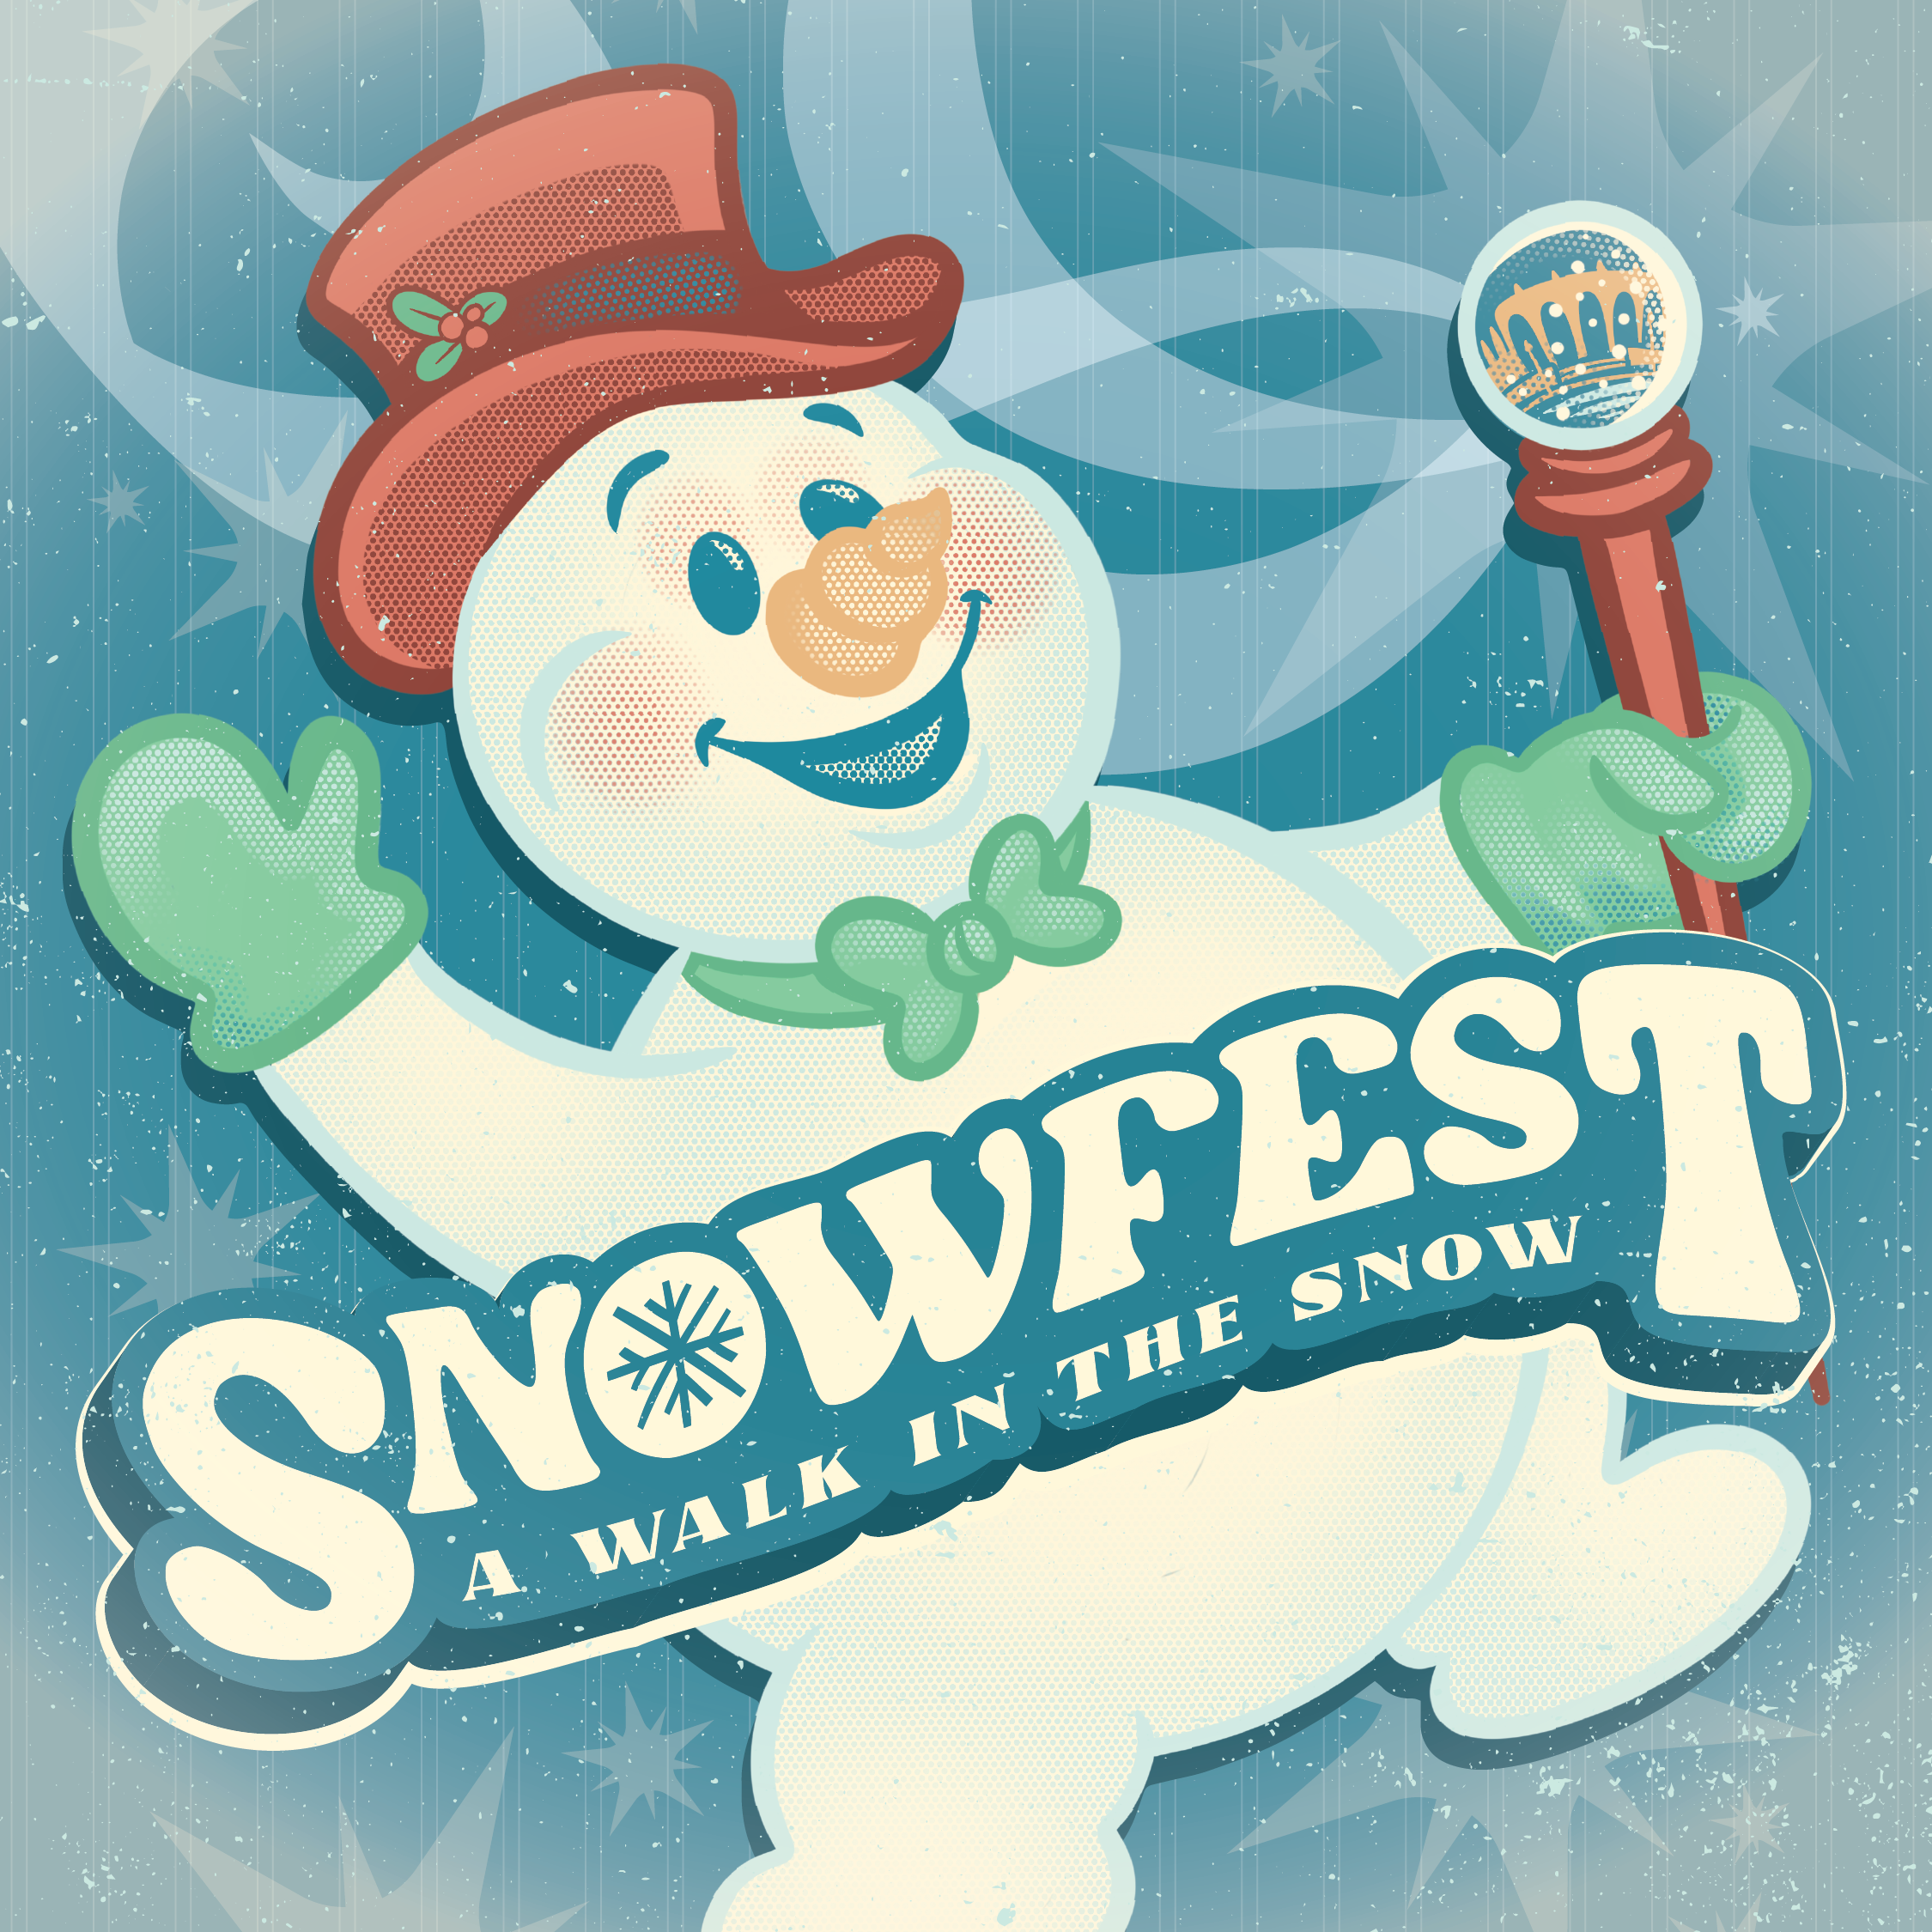 Snowfest Snowman event logo